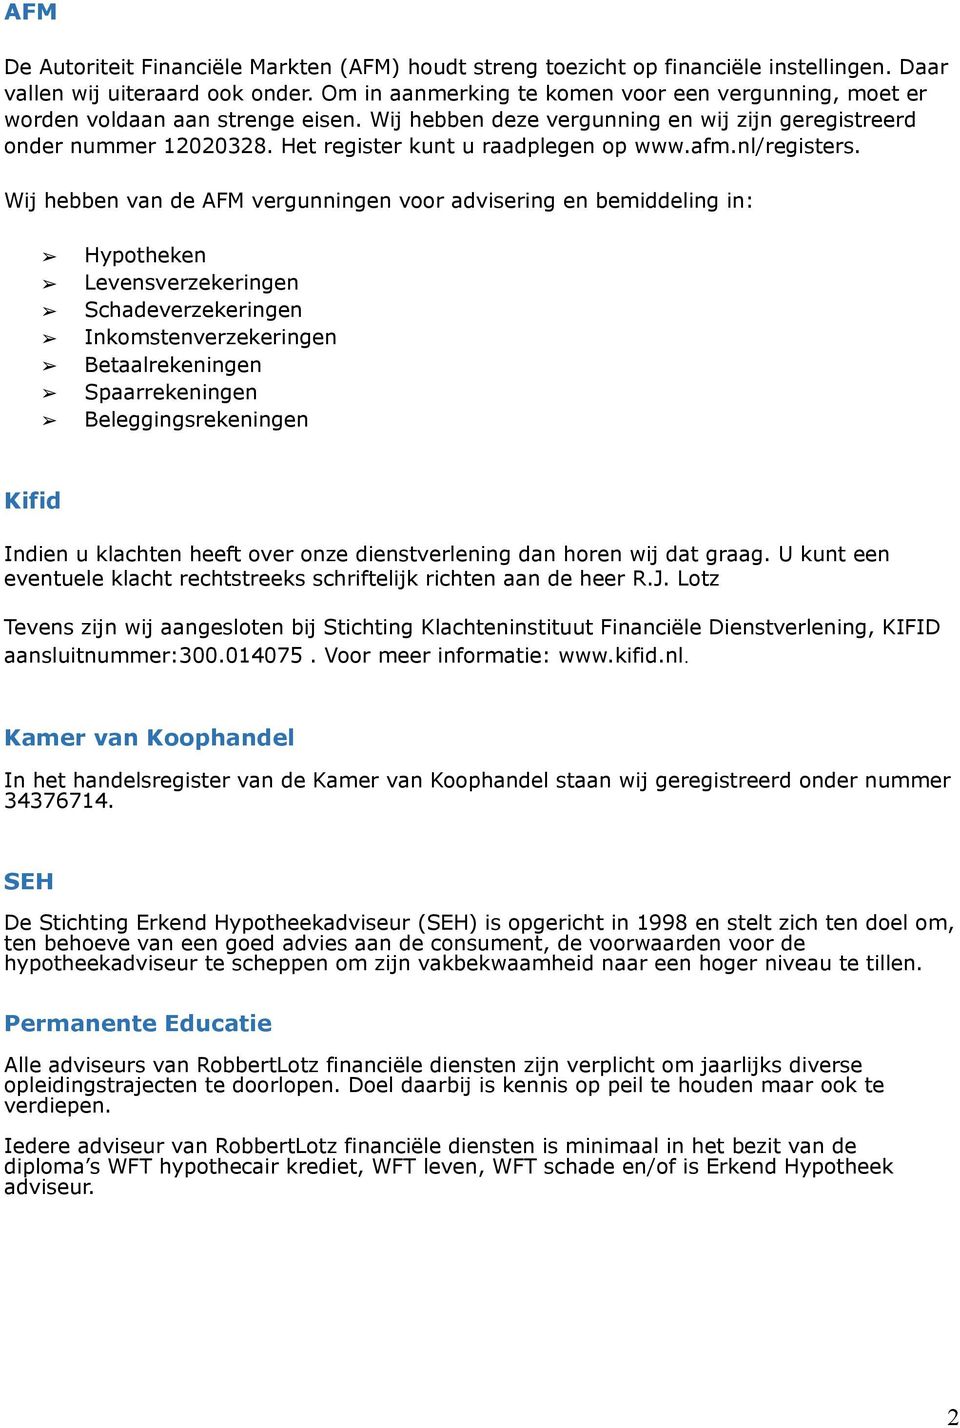 Het register kunt u raadplegen op www.afm.nl/registers.